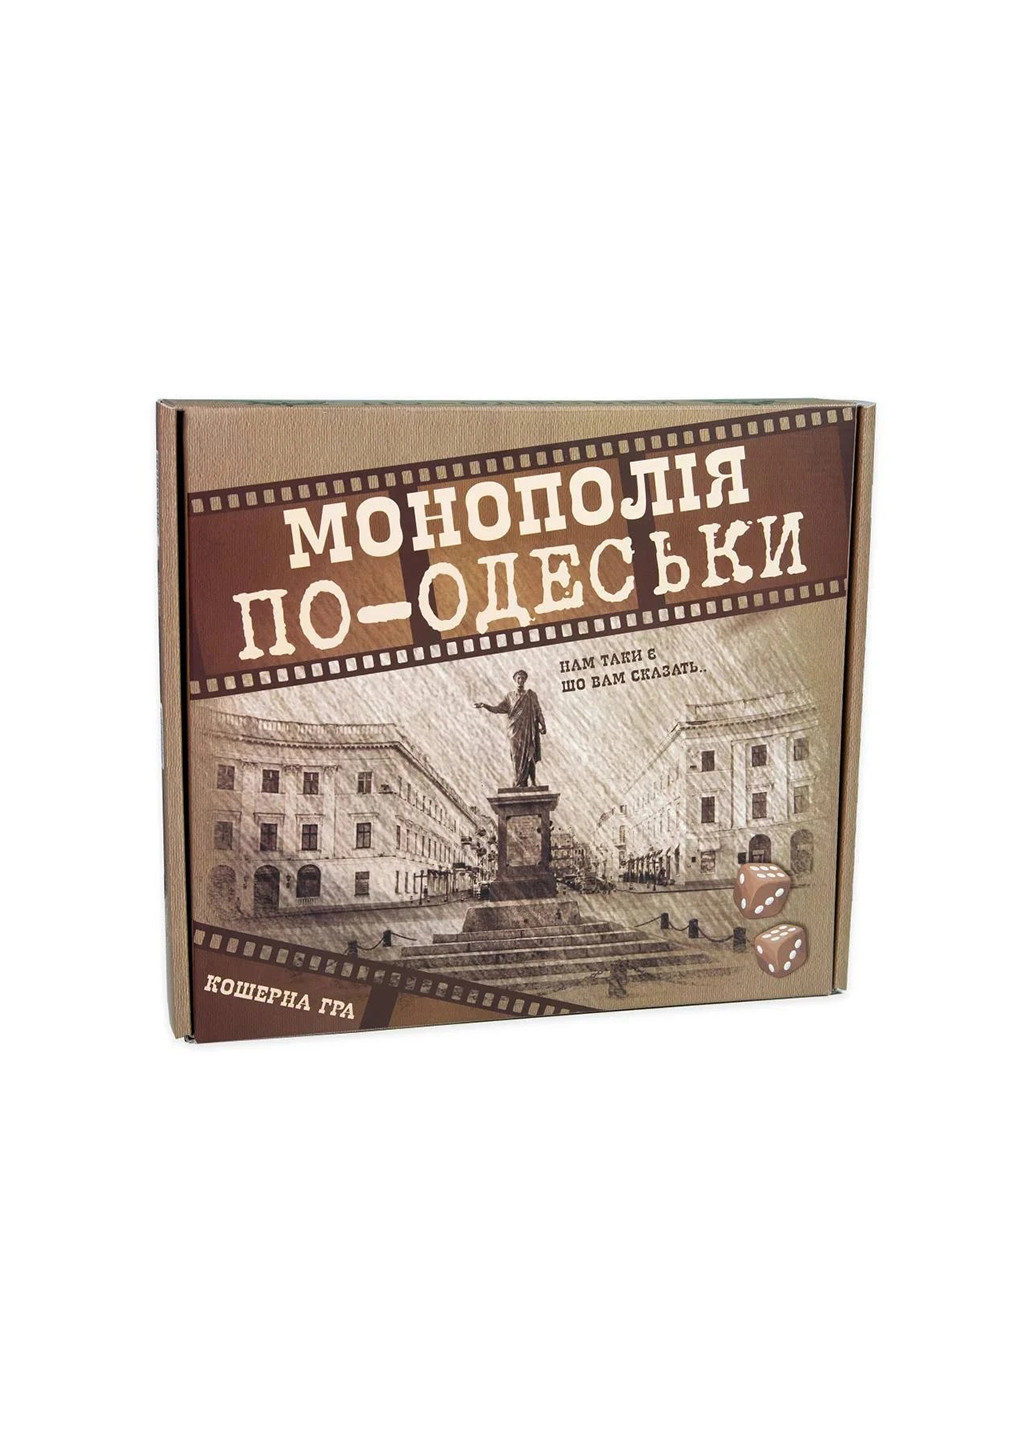 Настольная игра Монополия по-Одесски развлекательная экономическая на украинском языке 30318 Strateg (258301947)